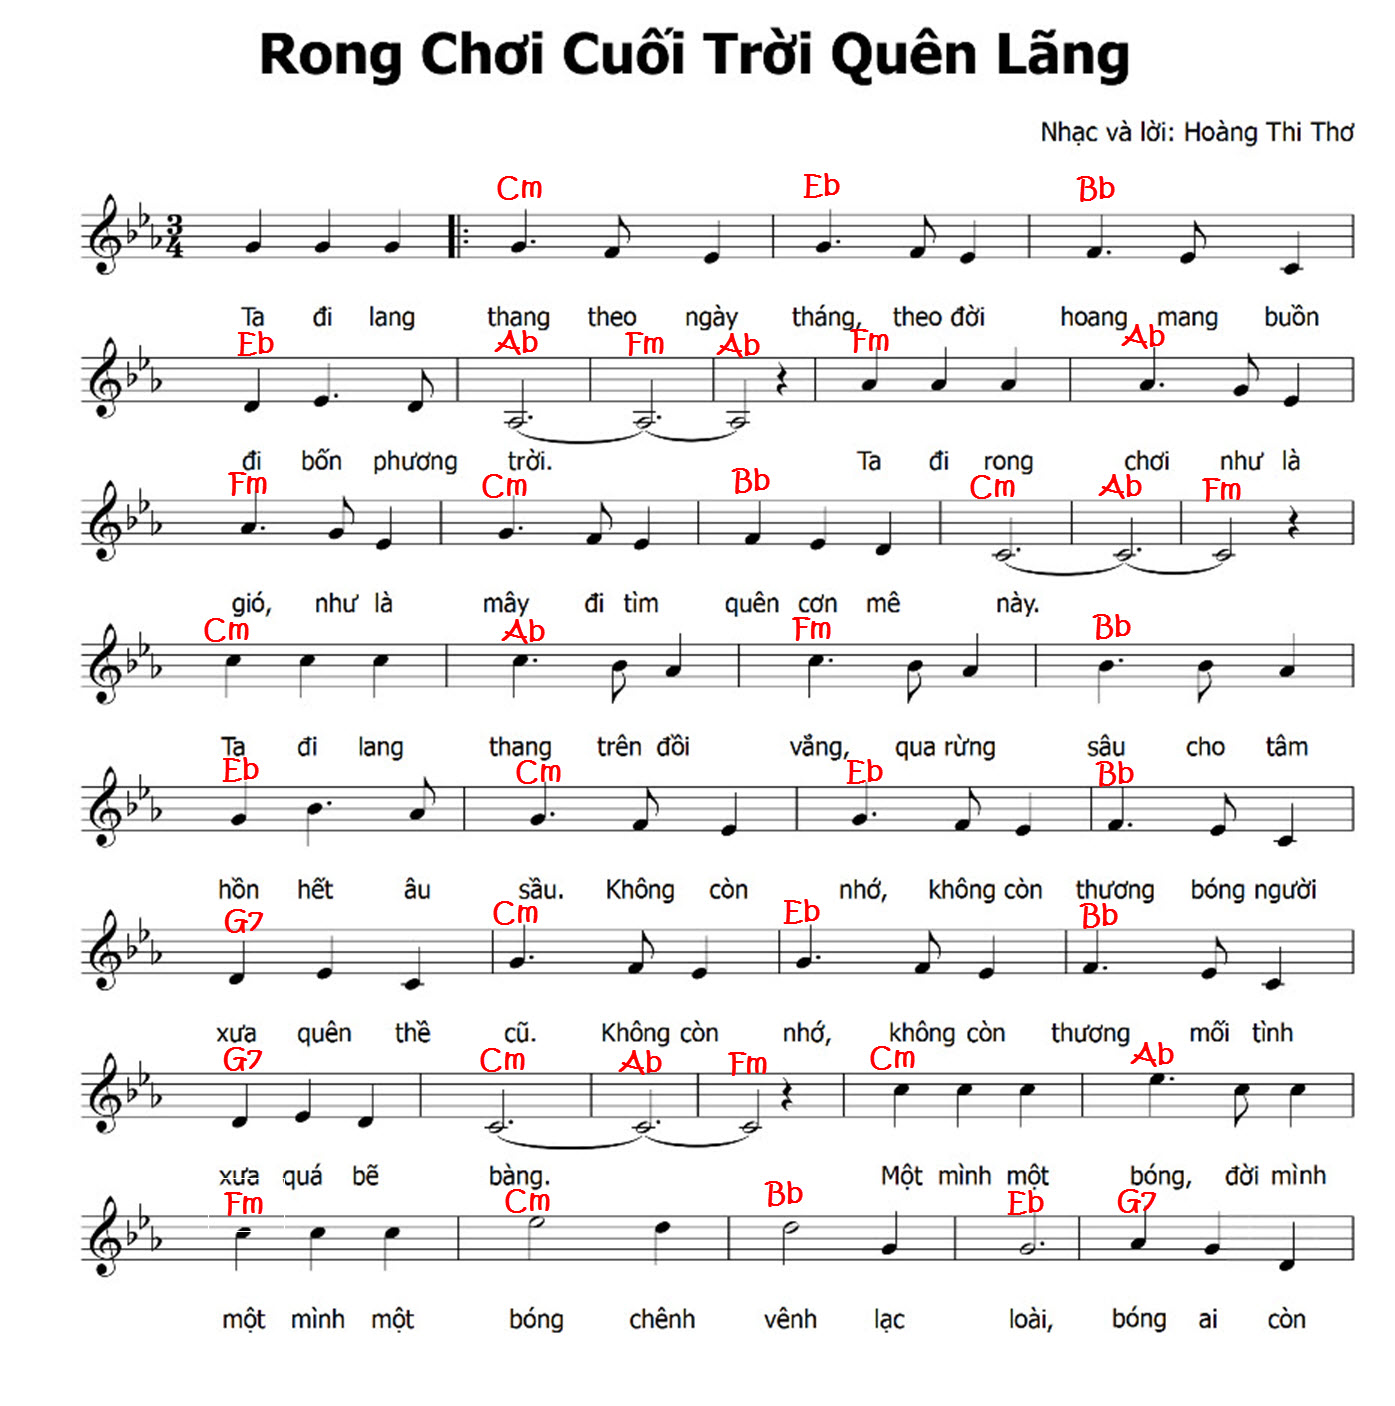 Rong Choi Cuoi Troi Quen Lang-1.jpg